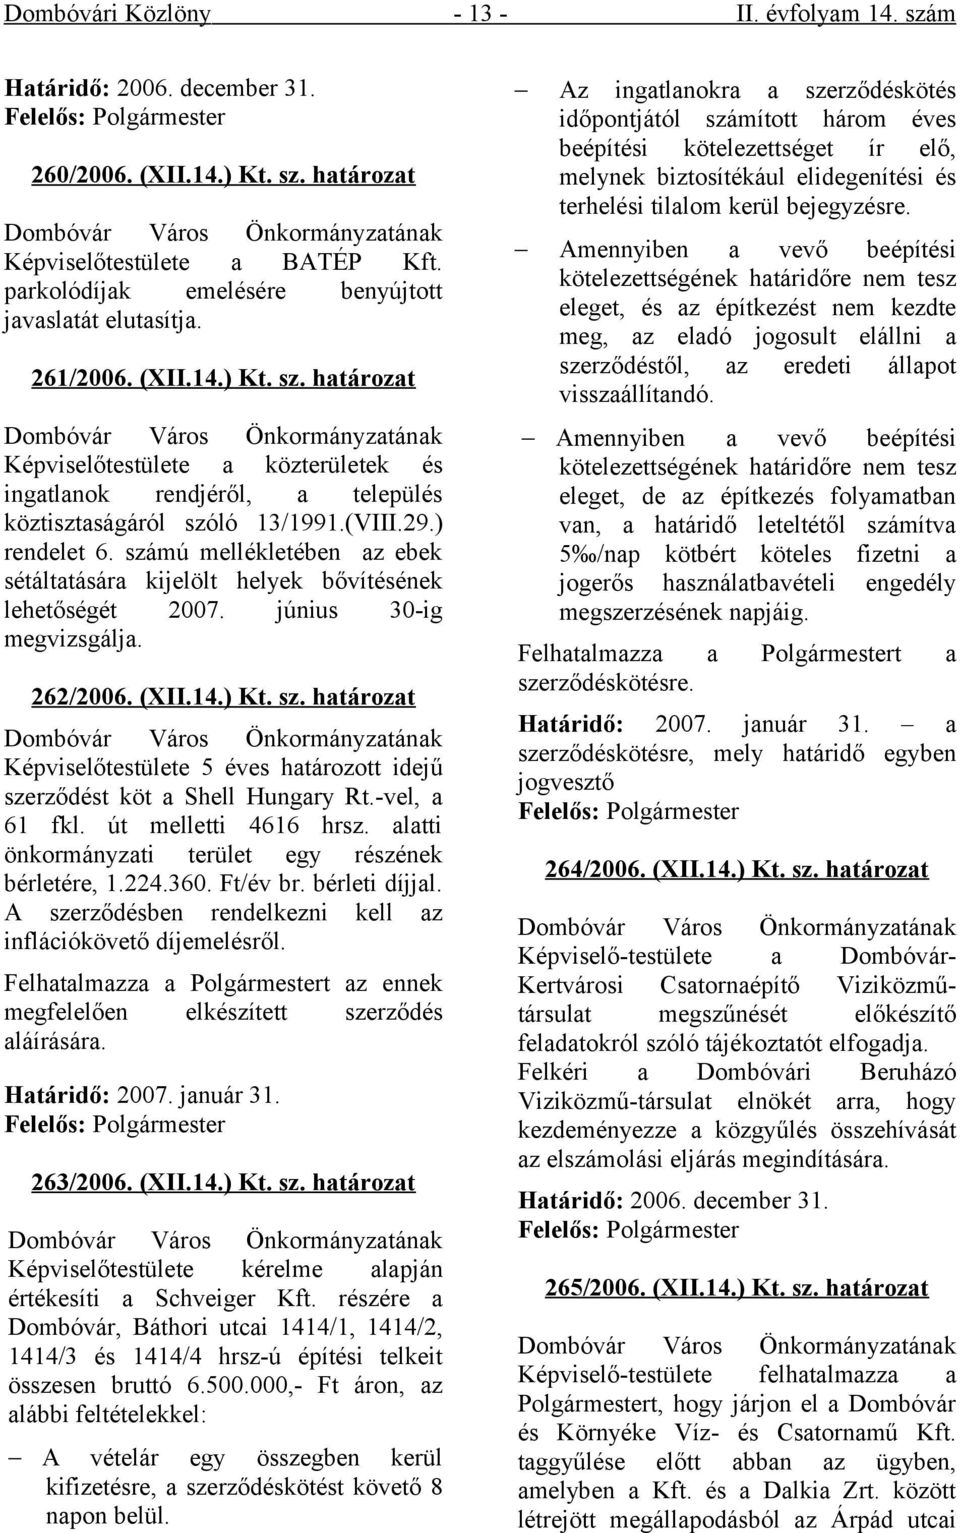 határozat Dombóvár Város Önkormányzatának Képviselőtestülete a közterületek és ingatlanok rendjéről, a település köztisztaságáról szóló 13/1991.(VIII.29.) rendelet 6.